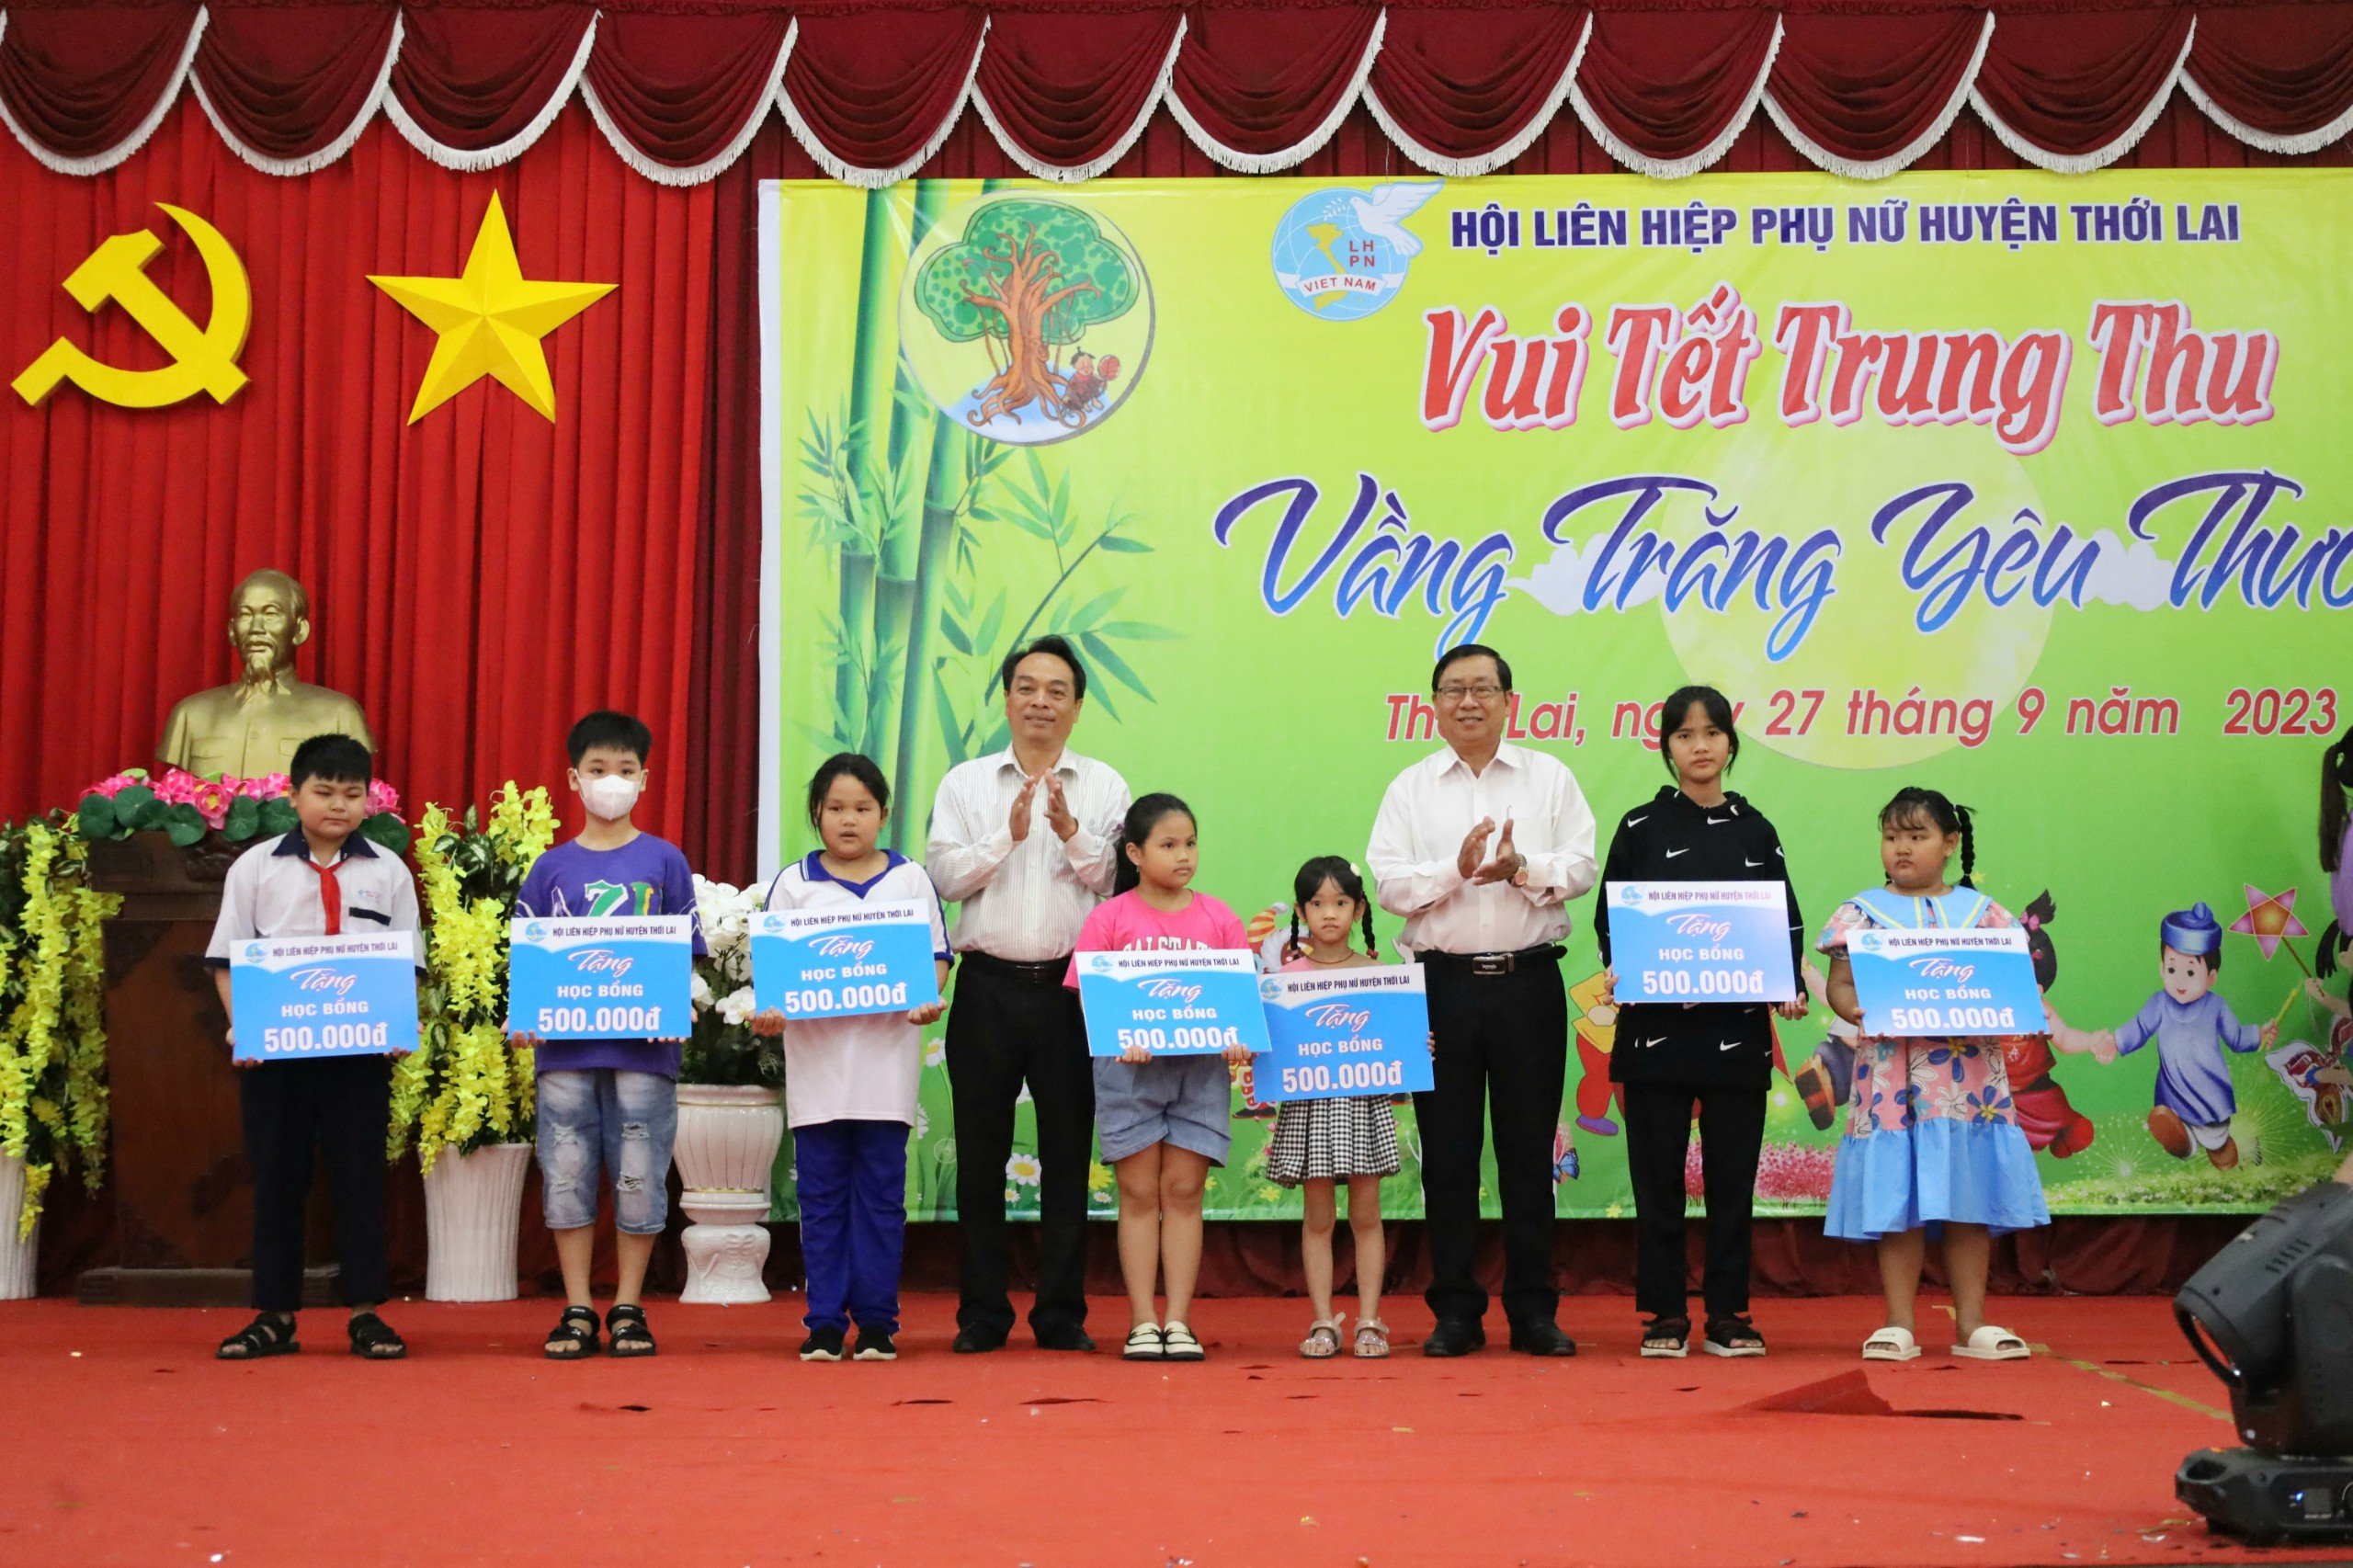 Ông Lê Tiến Dũng - Phó Chủ tịch thường trực HĐND huyện và ông Nguyễn Văn Hoàng - Phó Chủ tịch thường trực UBND huyện Thới Lai trao tặng học bổng cho các em thiếu nhi.